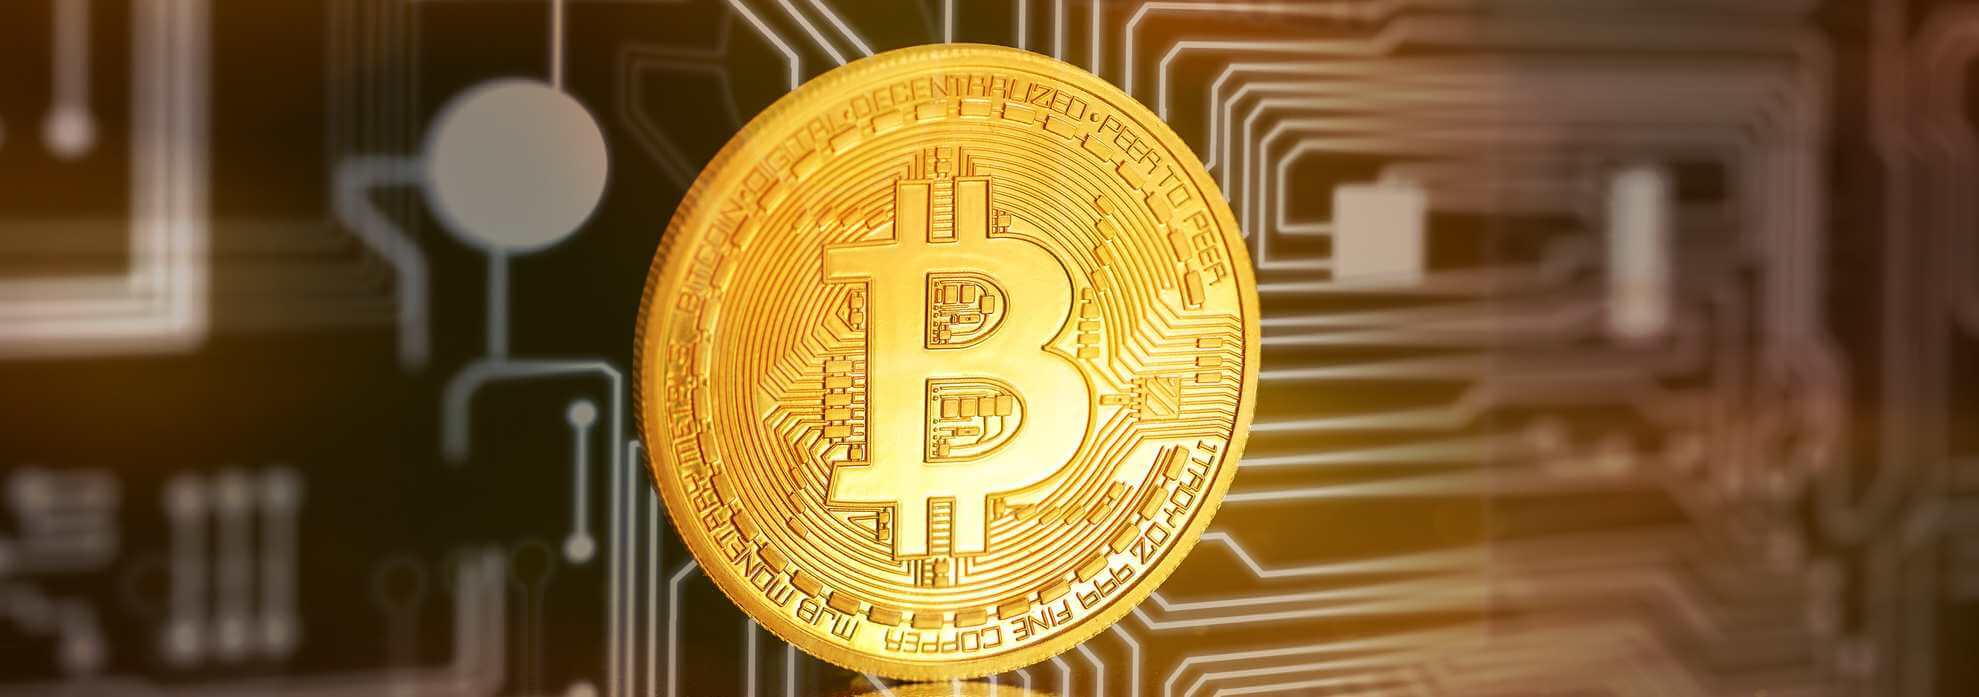 Was ist Bitcoin und wie funktioniert sie?